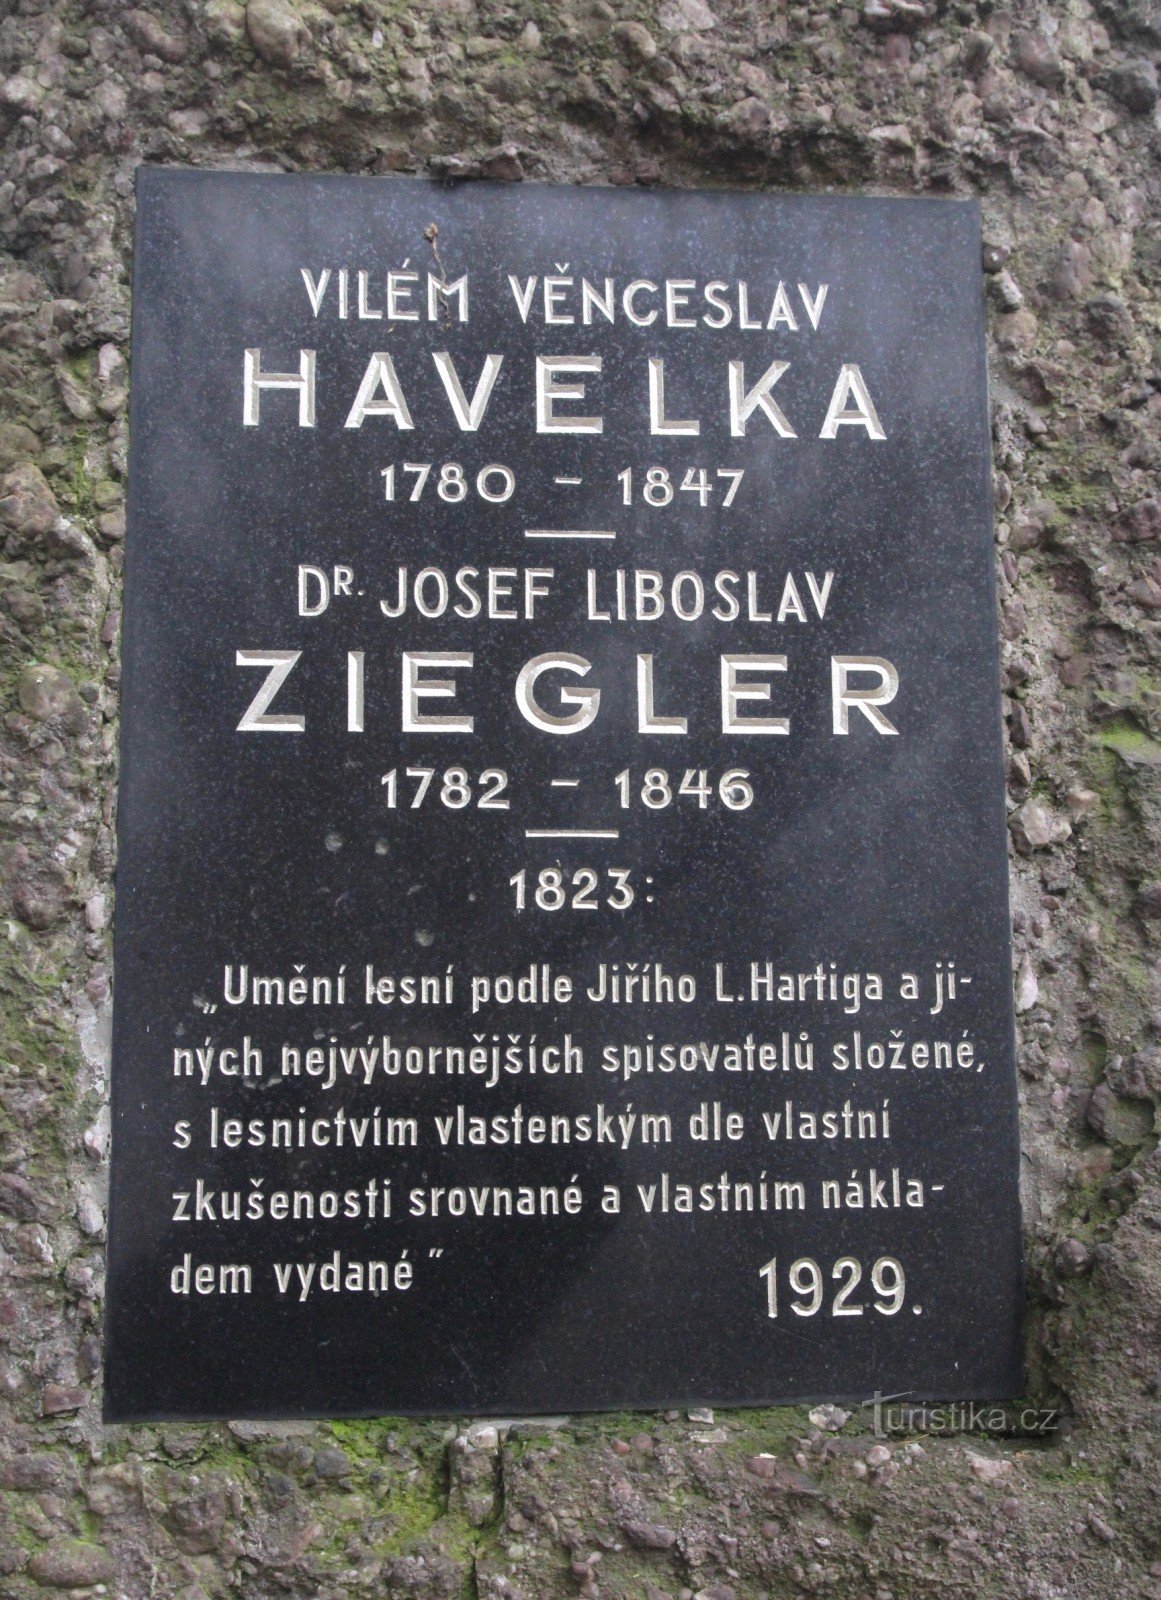 Пам'ятник В. В. Гавелку та Я. Л. Циглеру